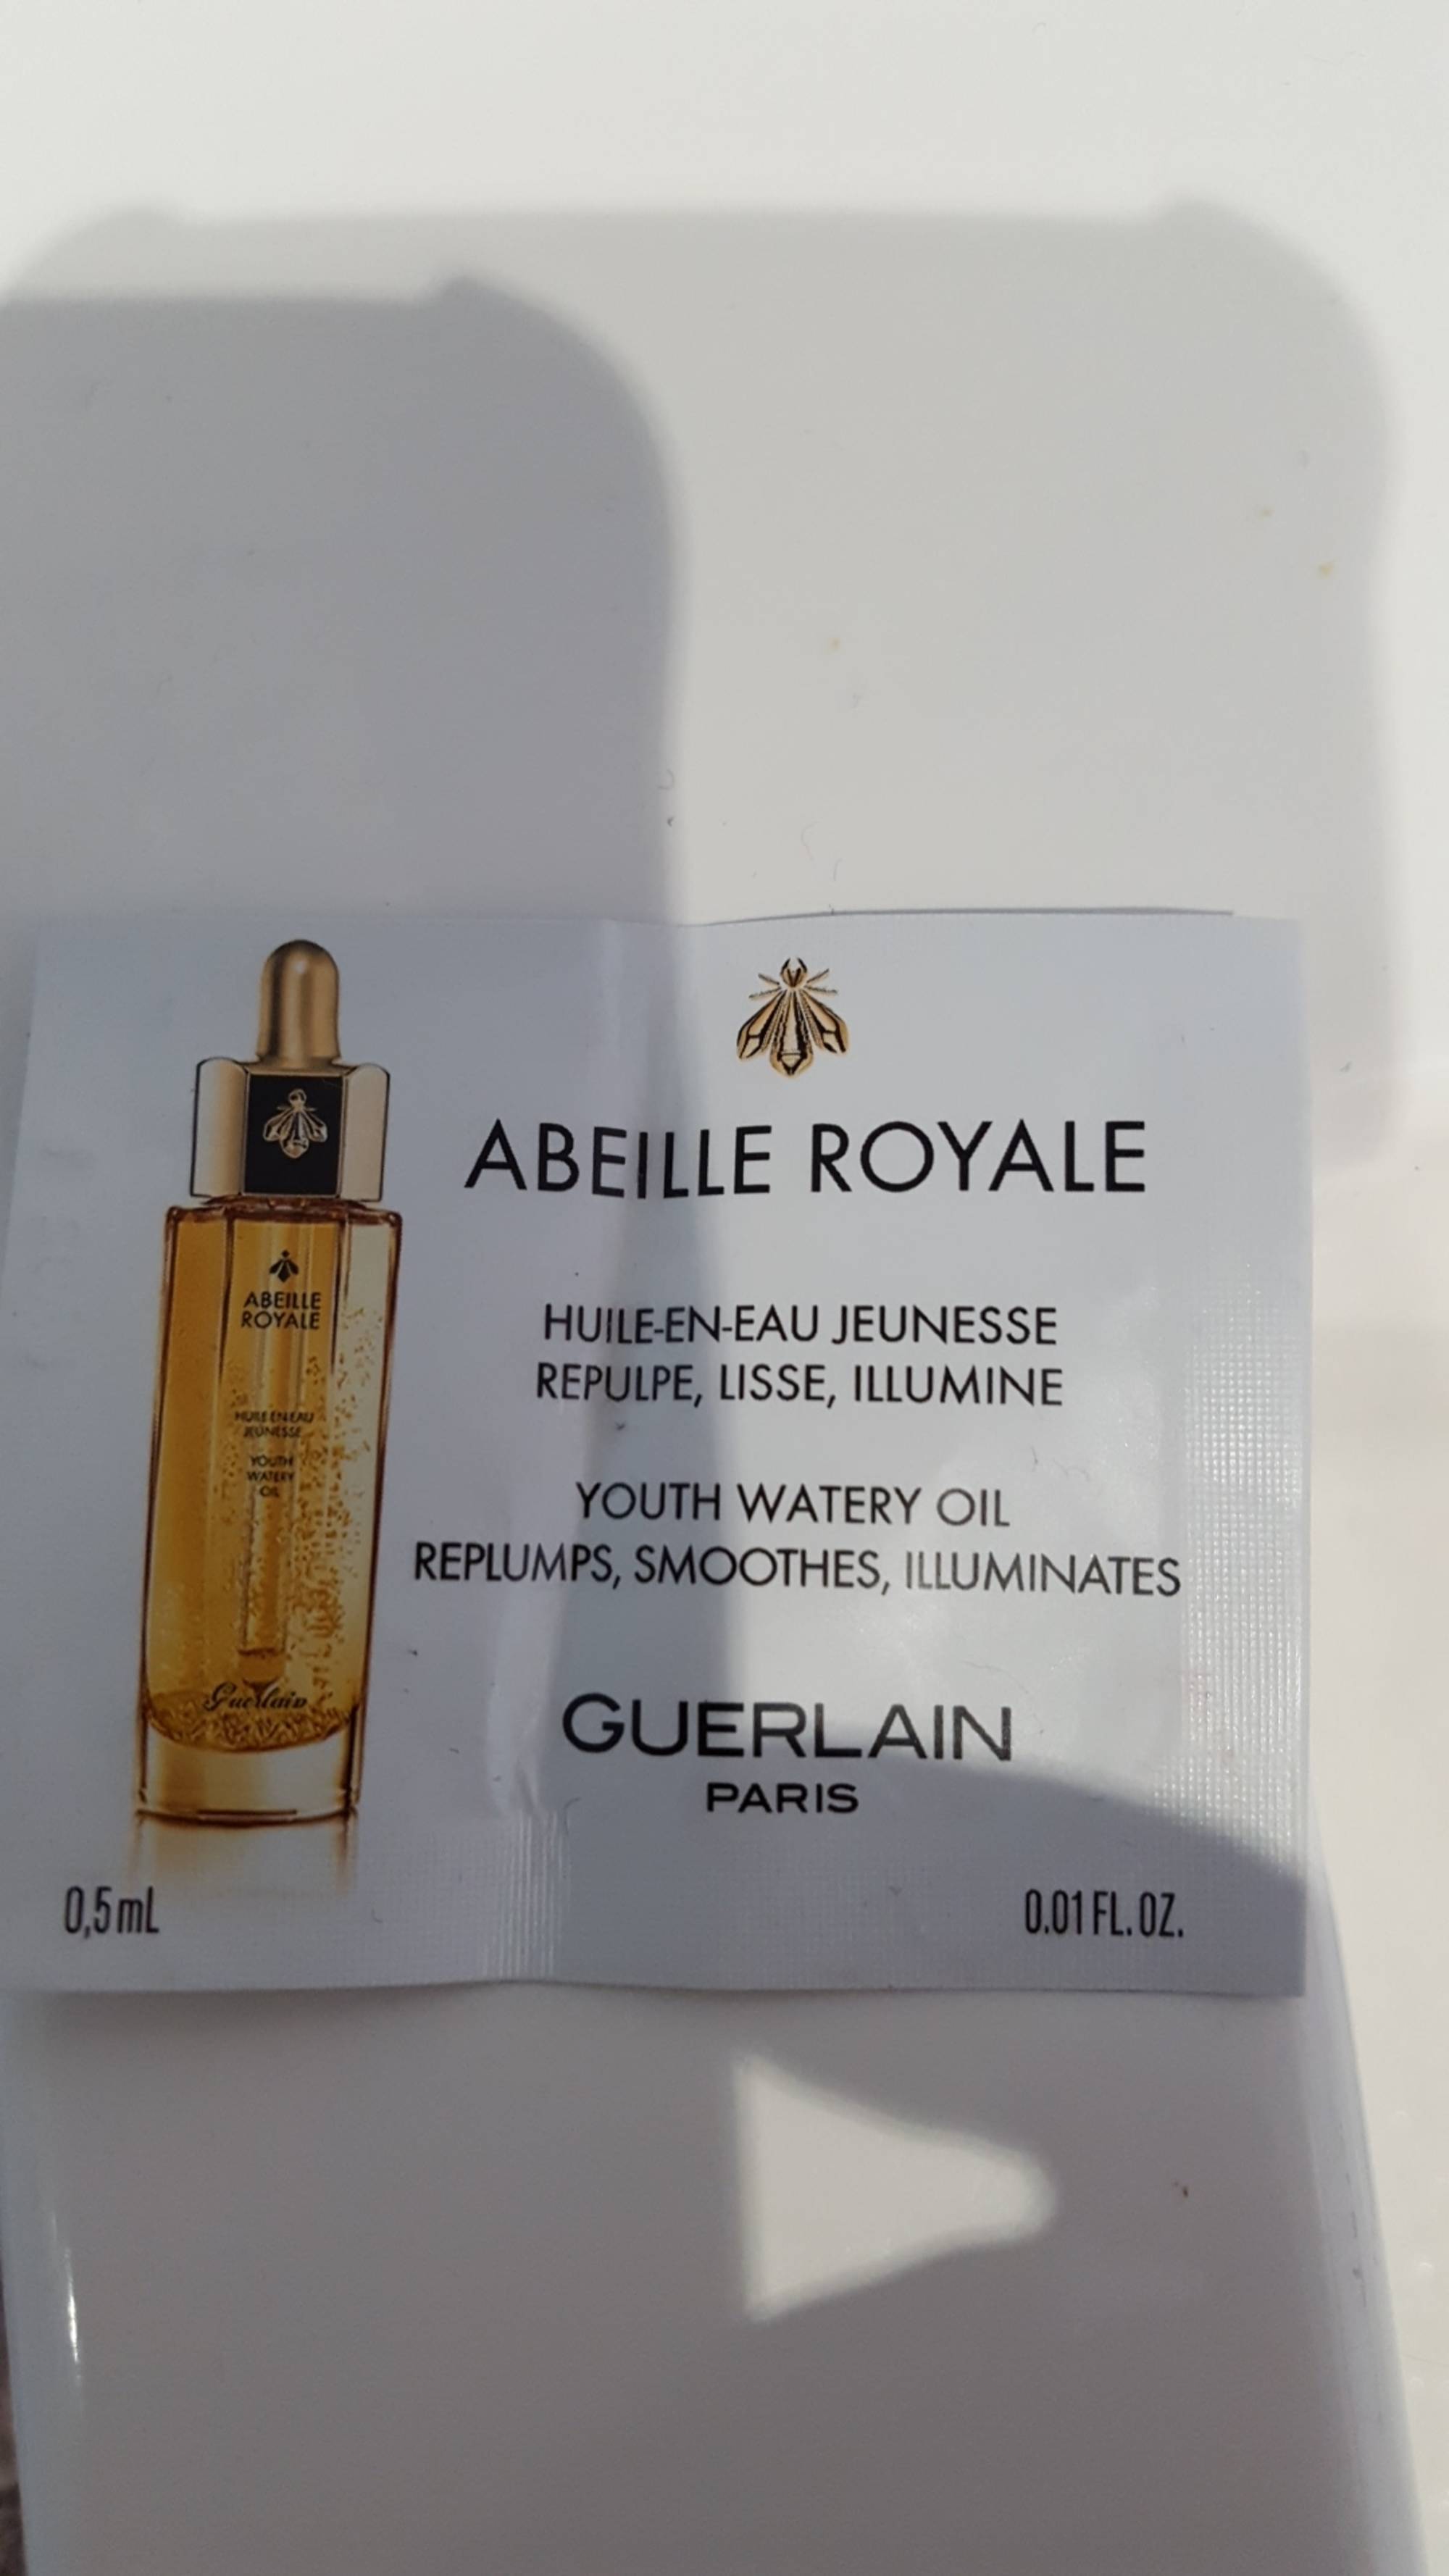 GUERLAIN PARIS - Abeille royale - huile en eau jeunesse 